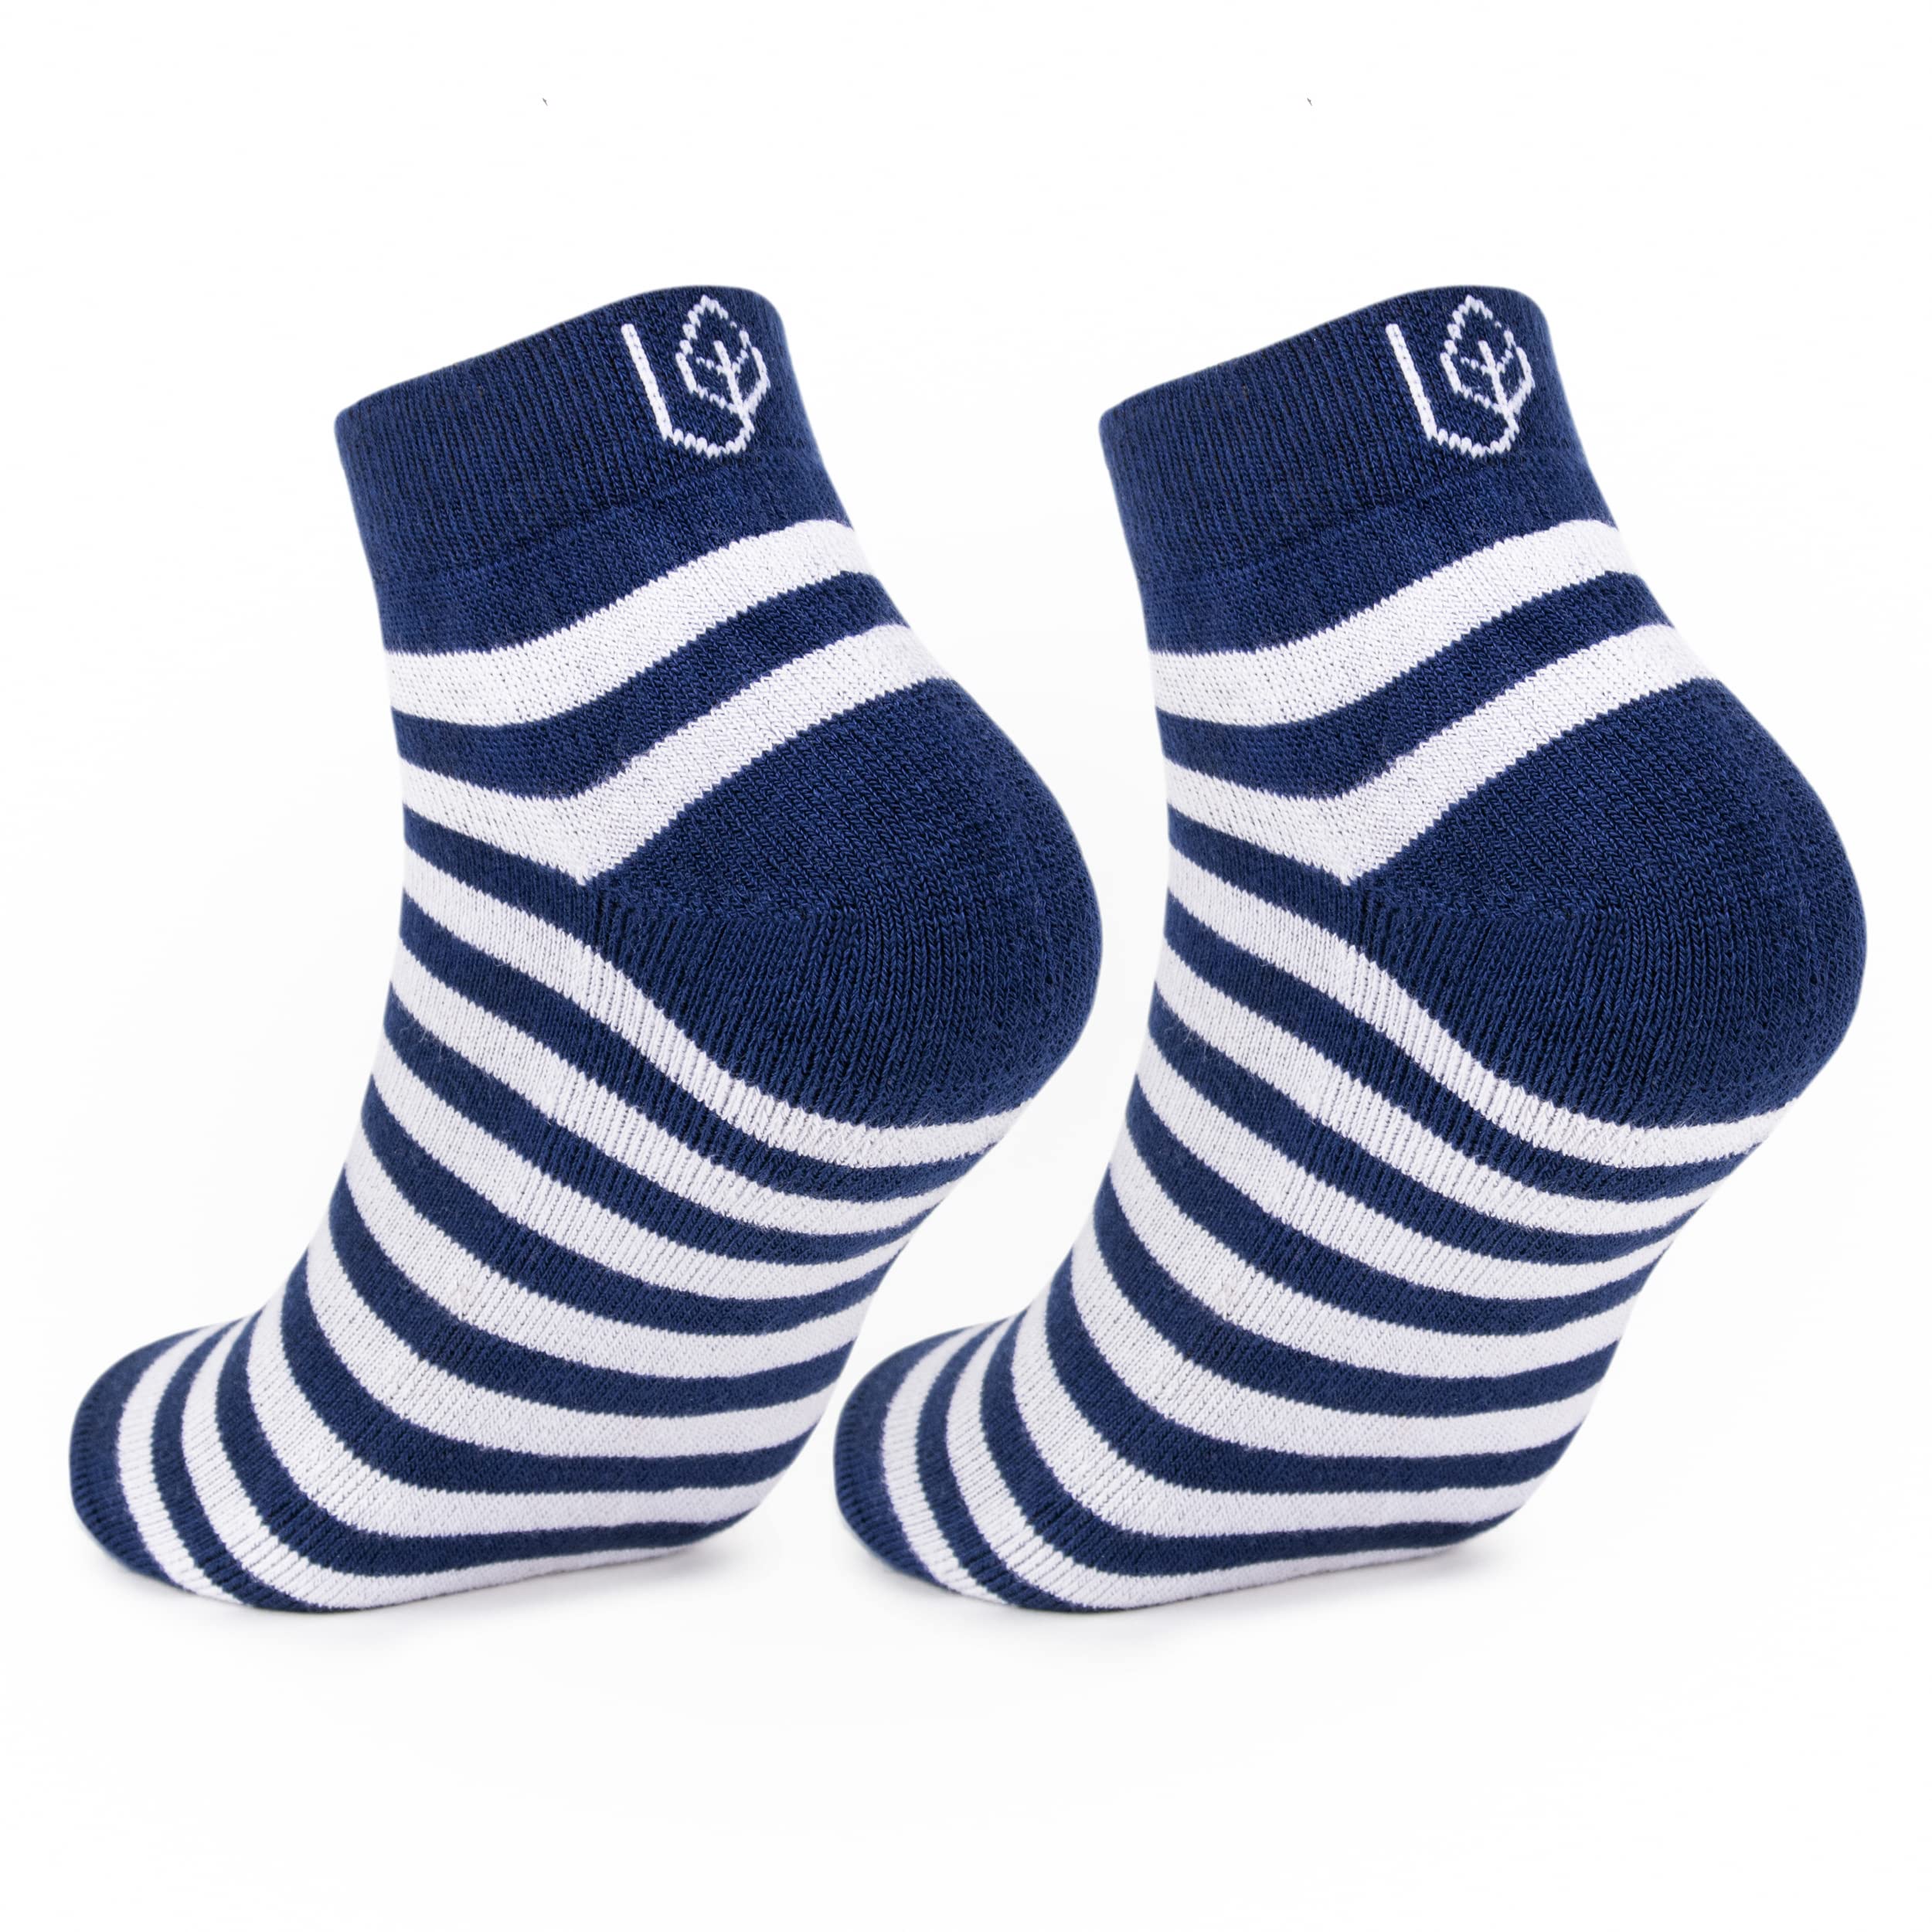 Mush Bamboo Socks for Men & Women - Ultra Soft, Breathable, Ankle socks for running, exercise & sports Pack of 3